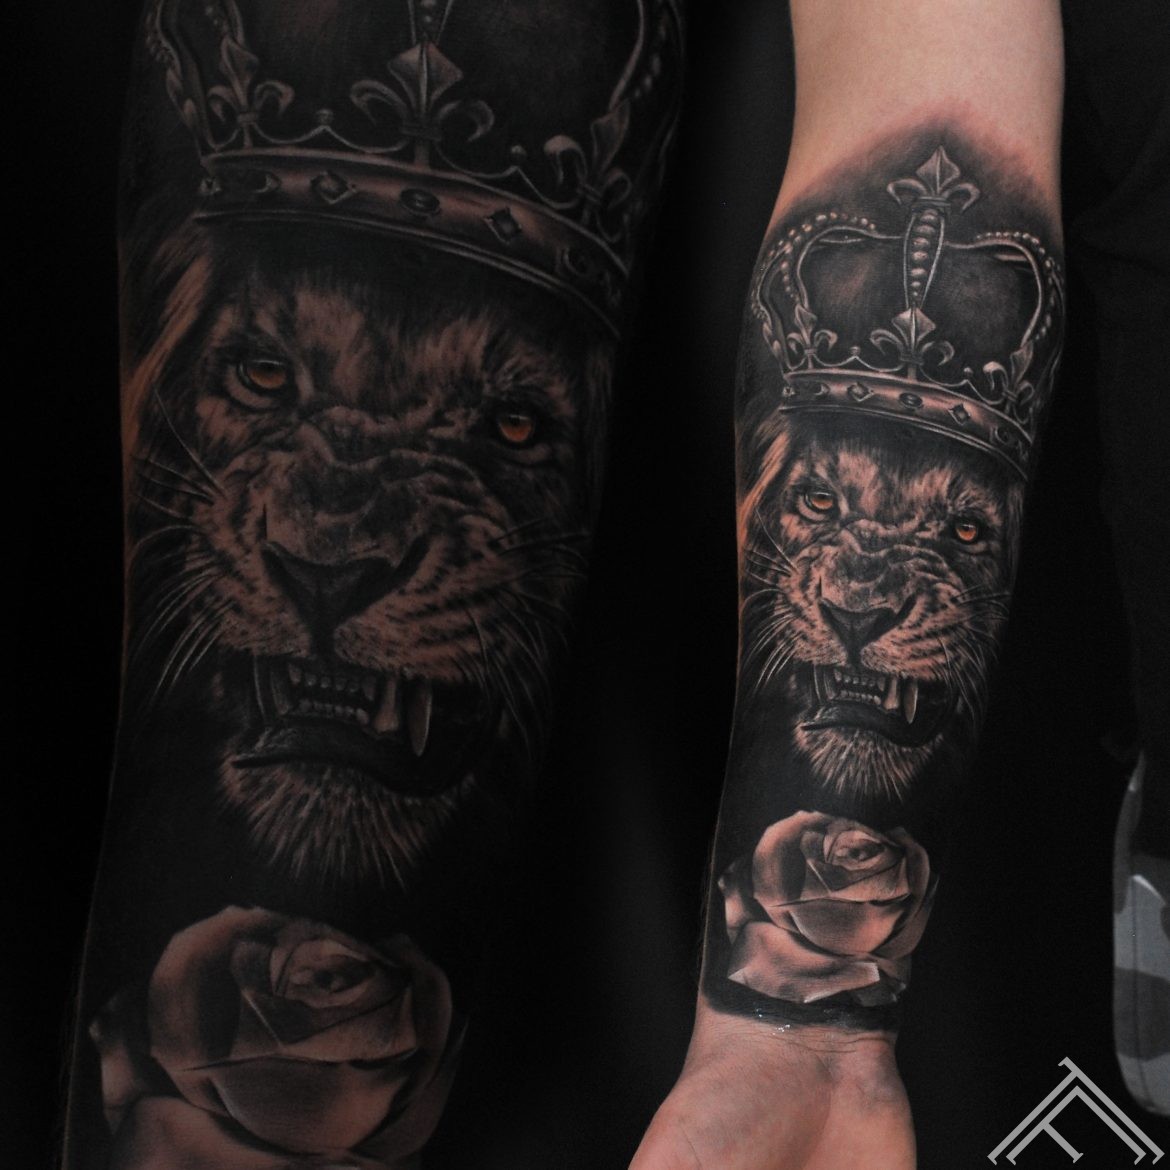 janisanderson-tattoo-lion-tattoofrequency-bezudz